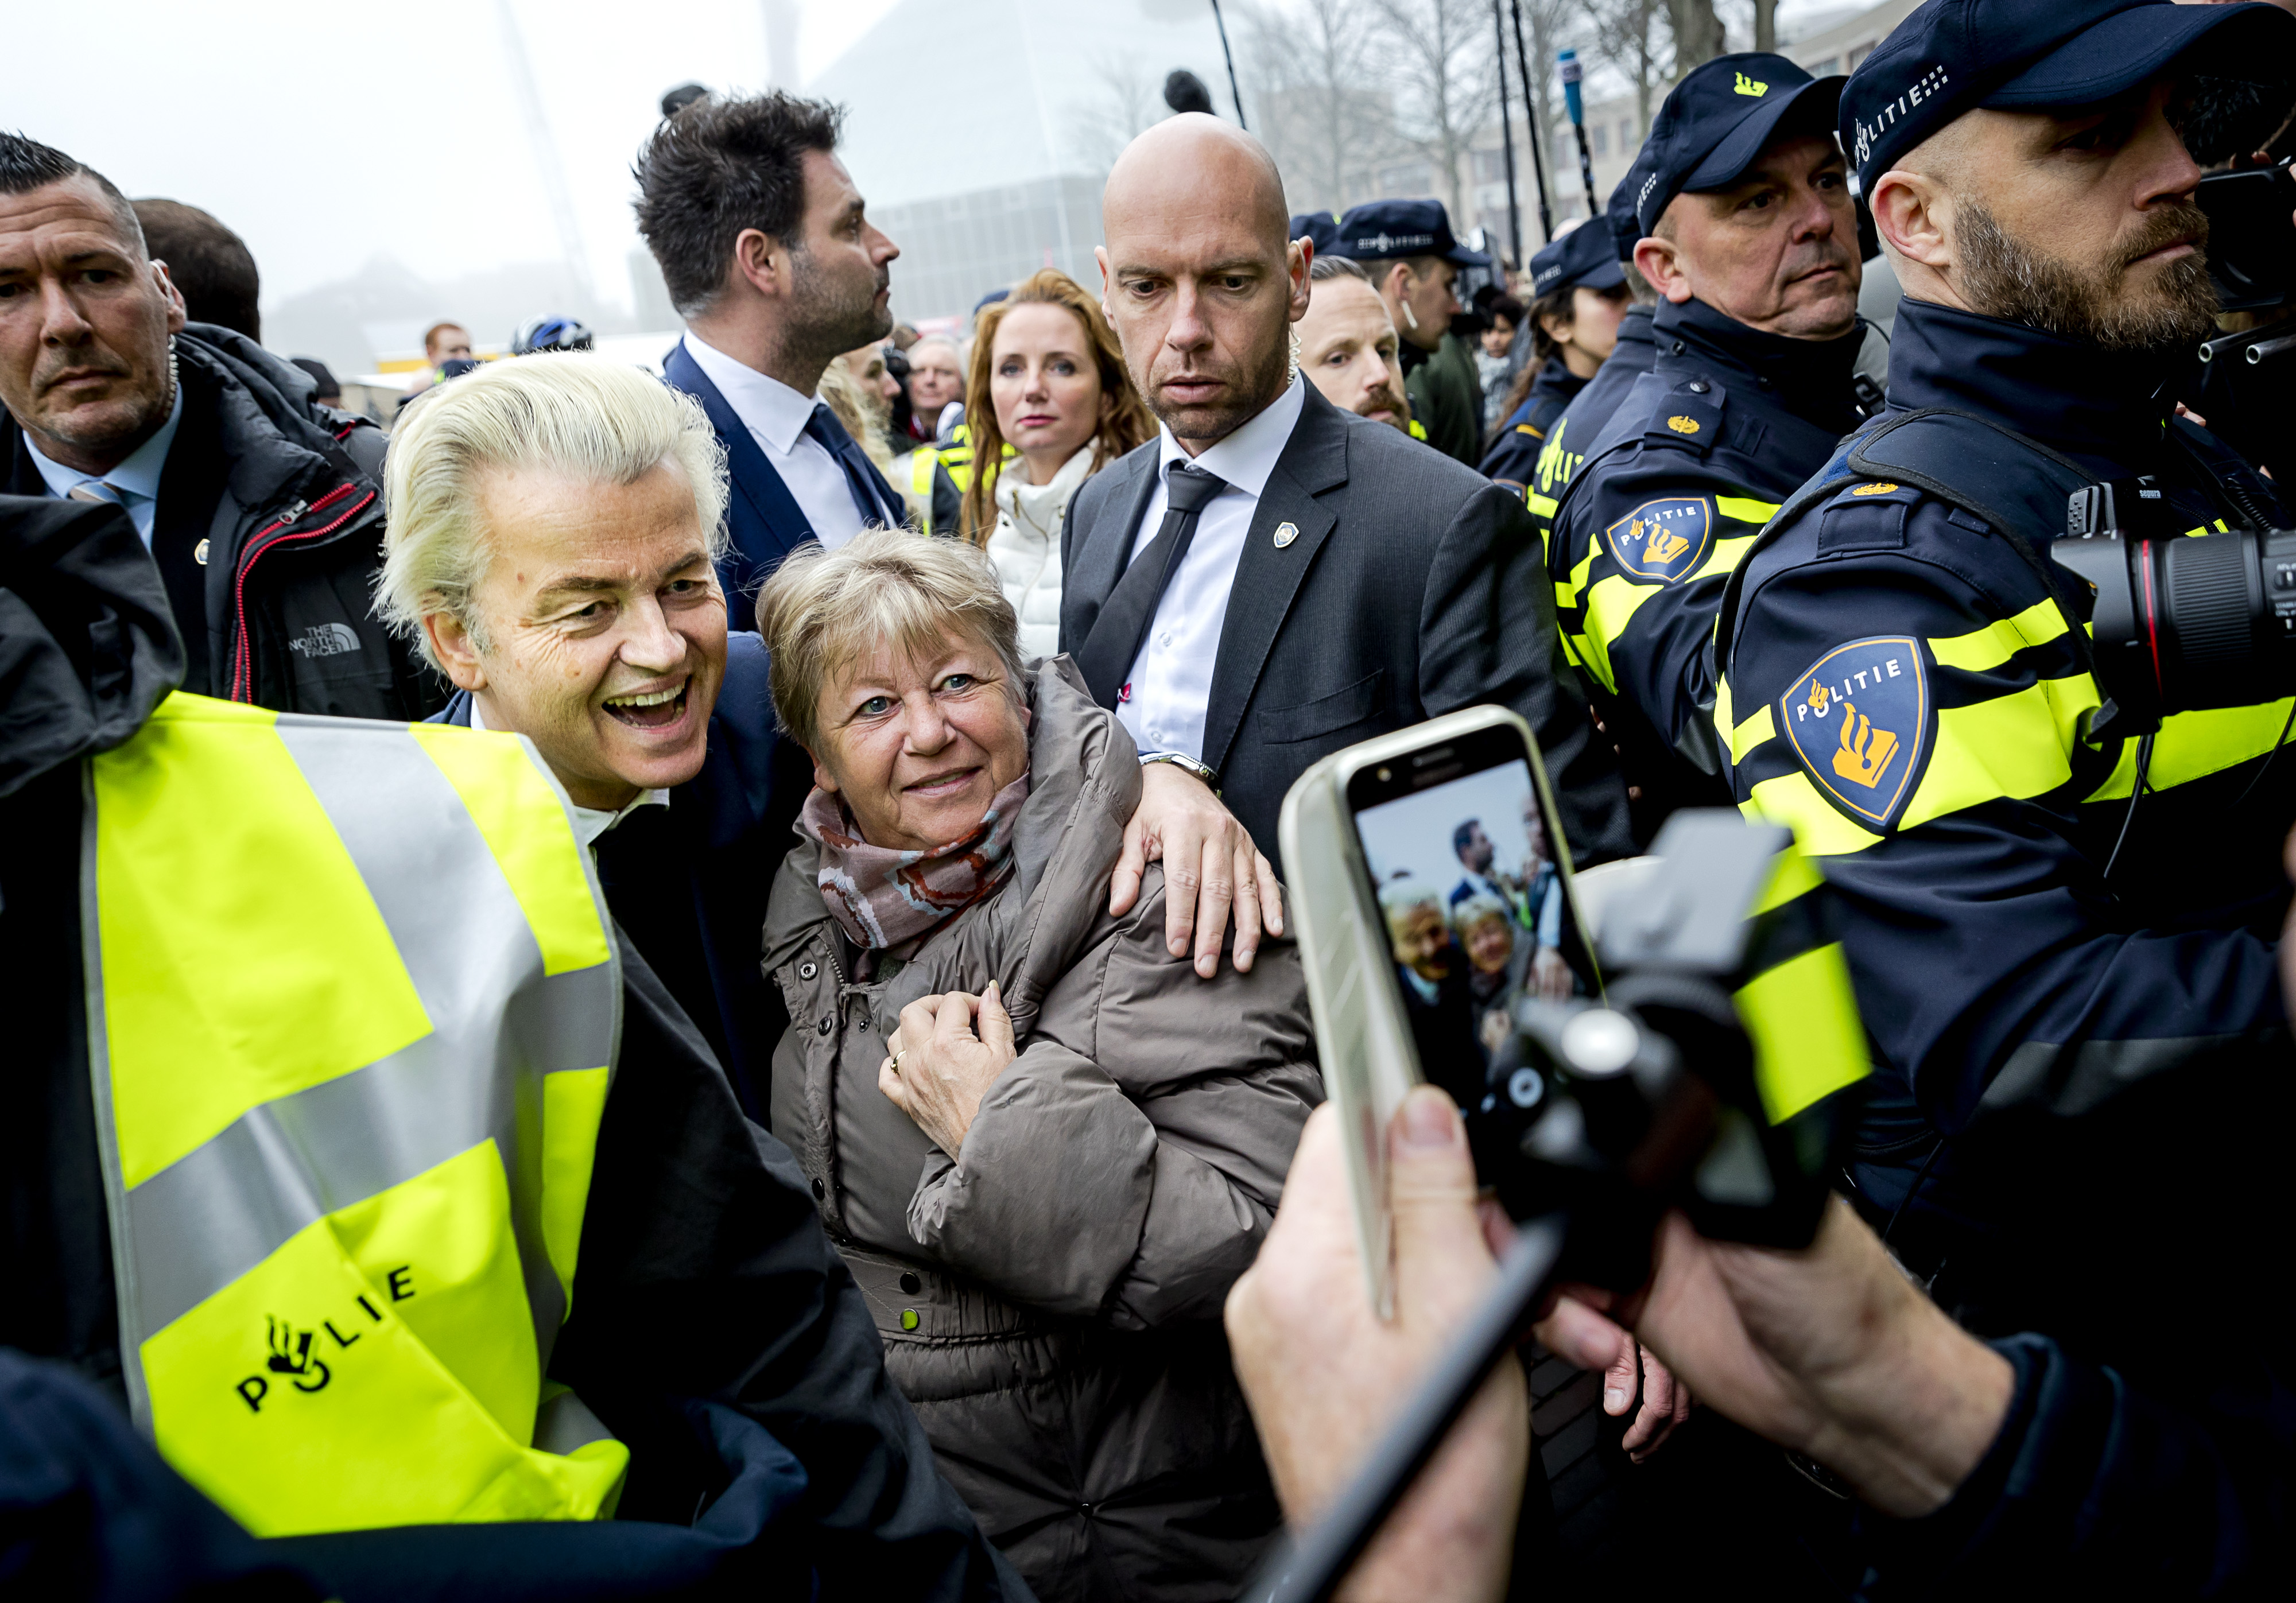 2017-02-18 11:34:24 SPIJKENISSE - PVV-leider Geert Wilders gaat op de foto in het centrum van Spijkenisse. De Partij voor de Vrijheid trapt hier de campagne voor de Tweede Kamerverkiezingen af. ANP REMKO DE WAAL